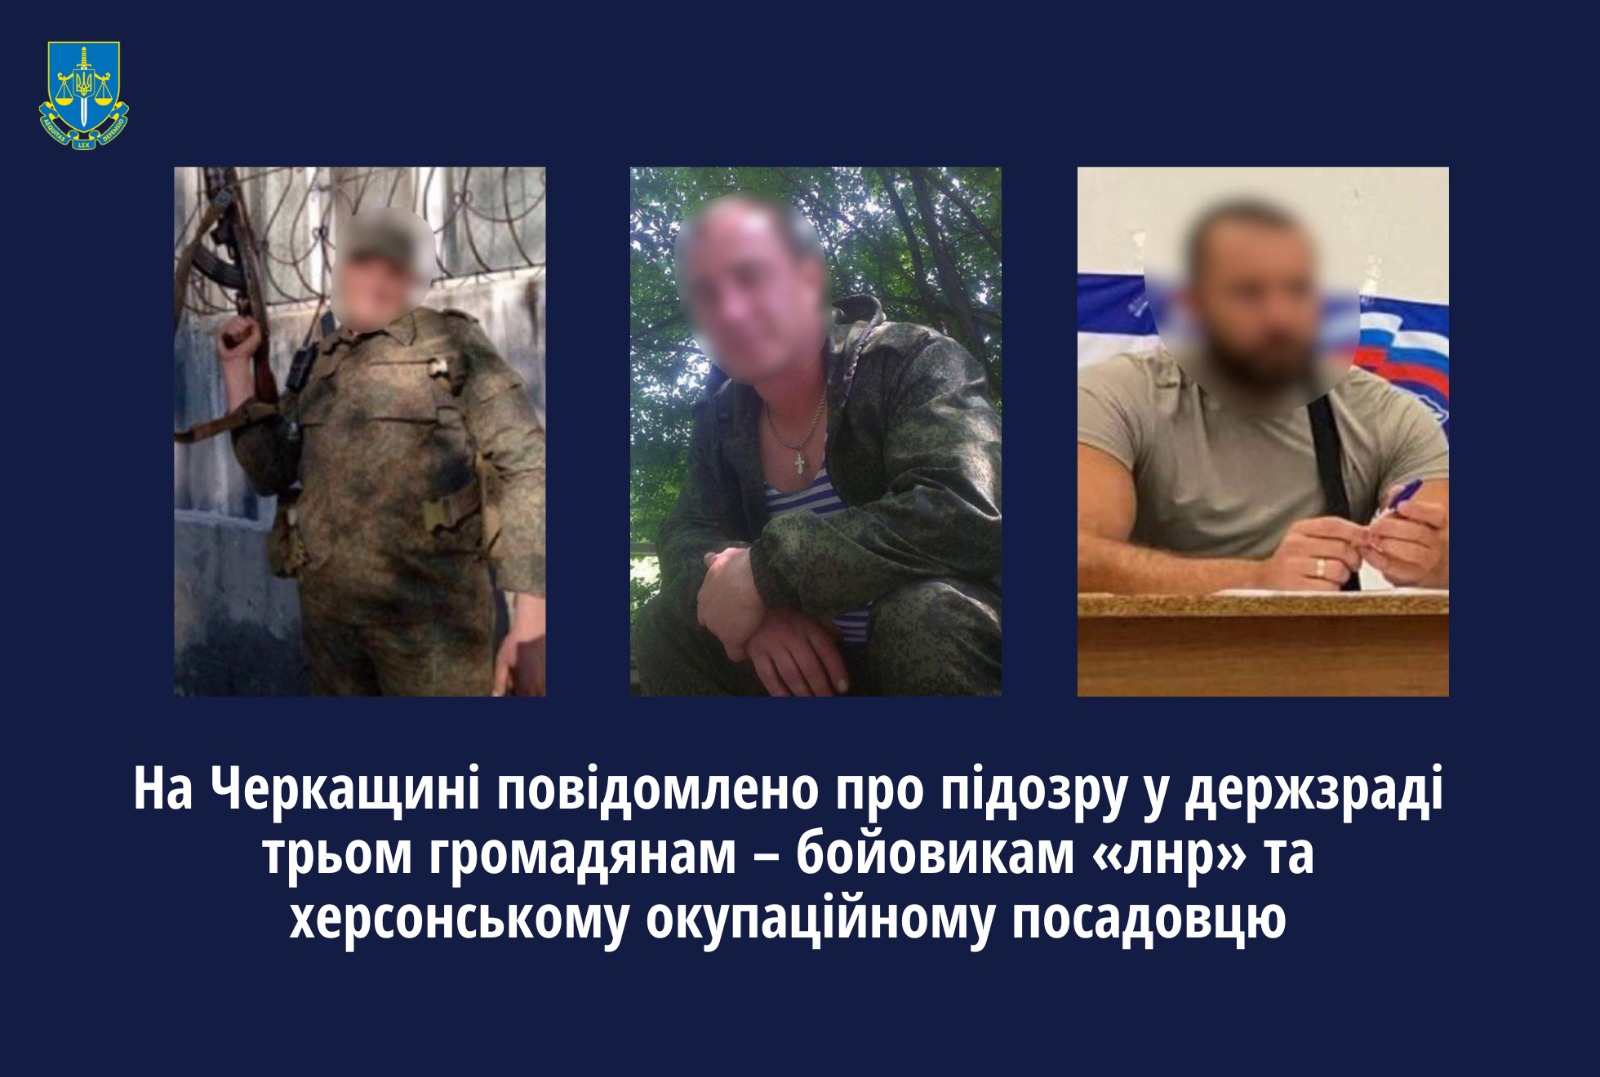 На Черкащині повідомлено про підозру у держзраді трьом громадянам – бойовикам «лнр» та херсонському окупаційному посадовцю